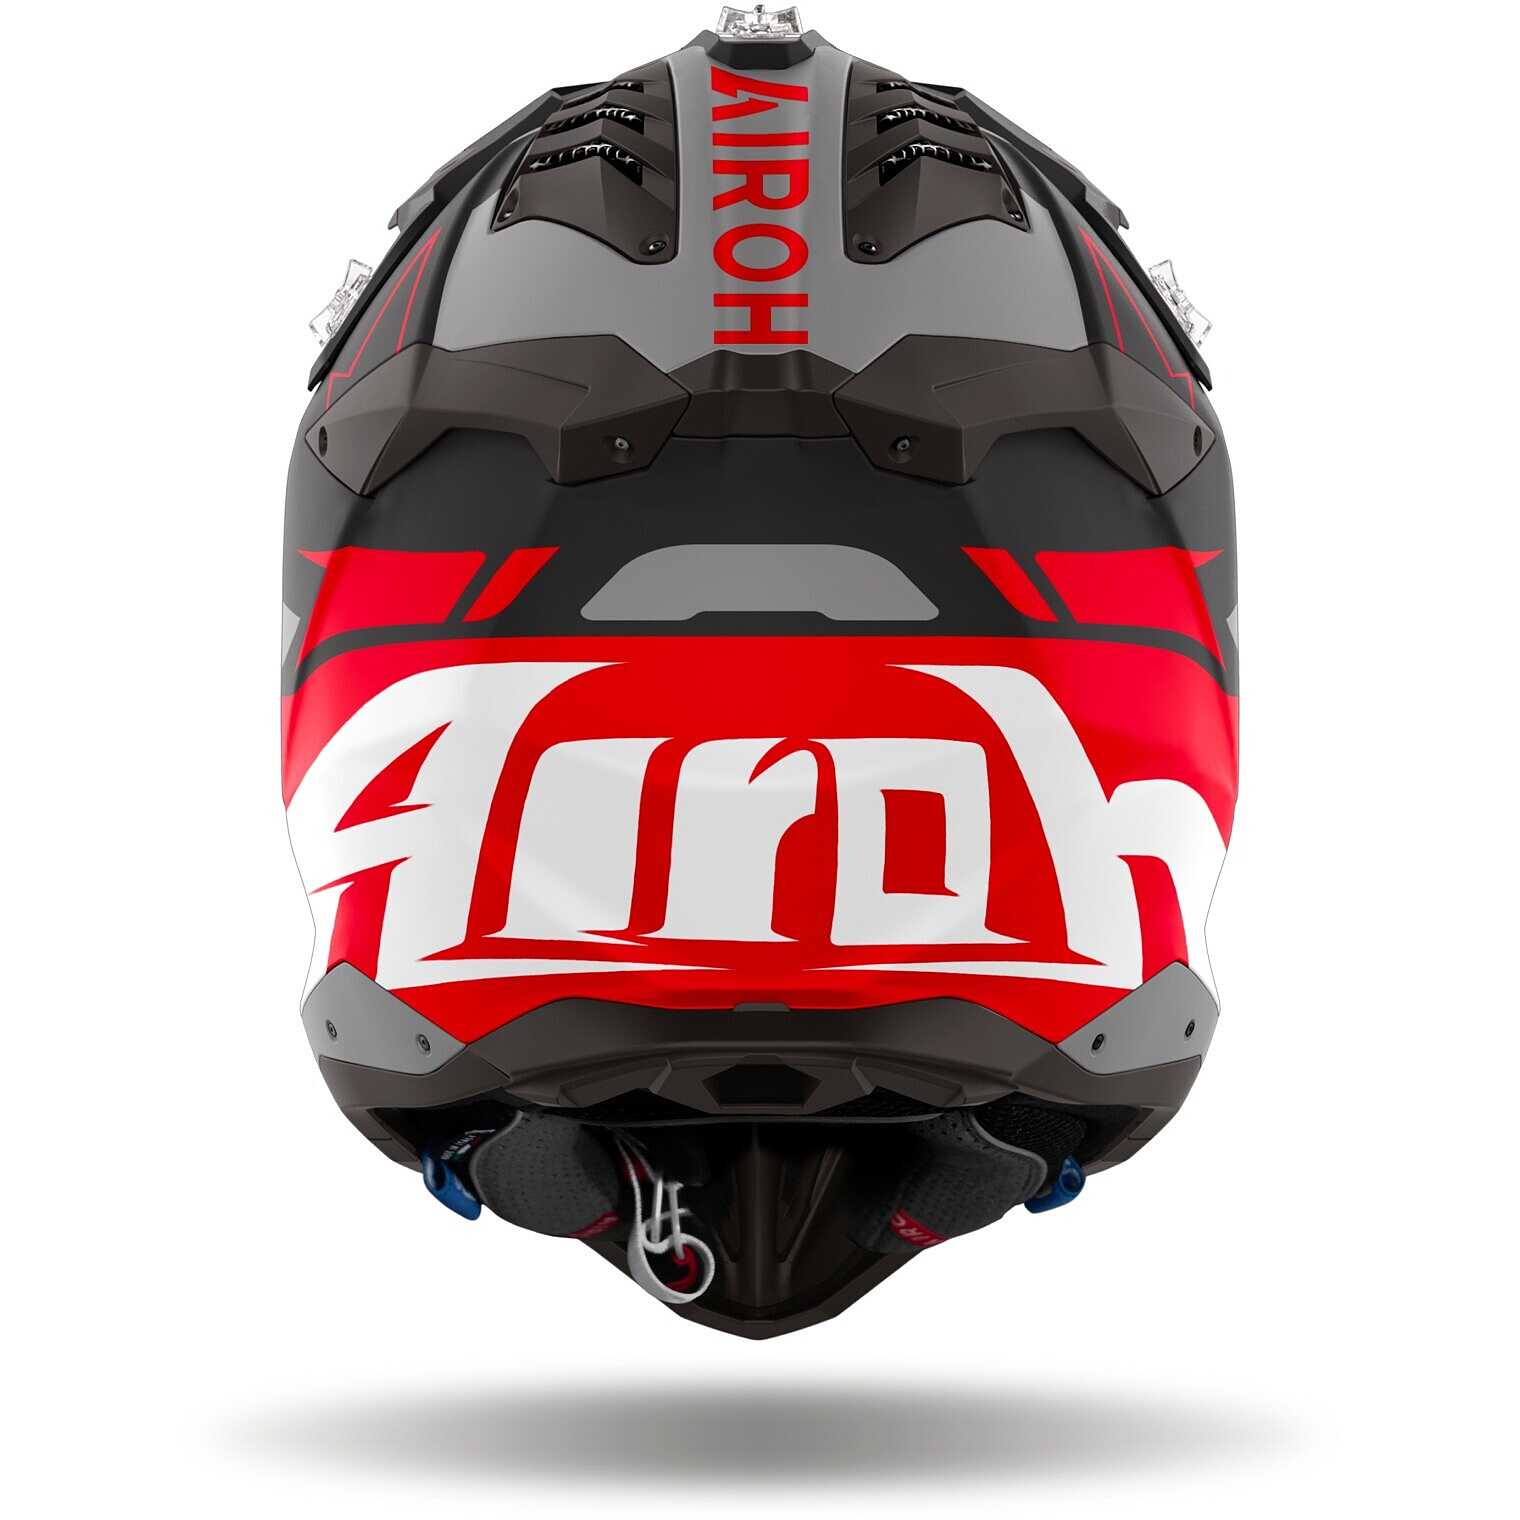 AIROH AVIATOR 3 CARBON casco cross - (Carbon Matt)